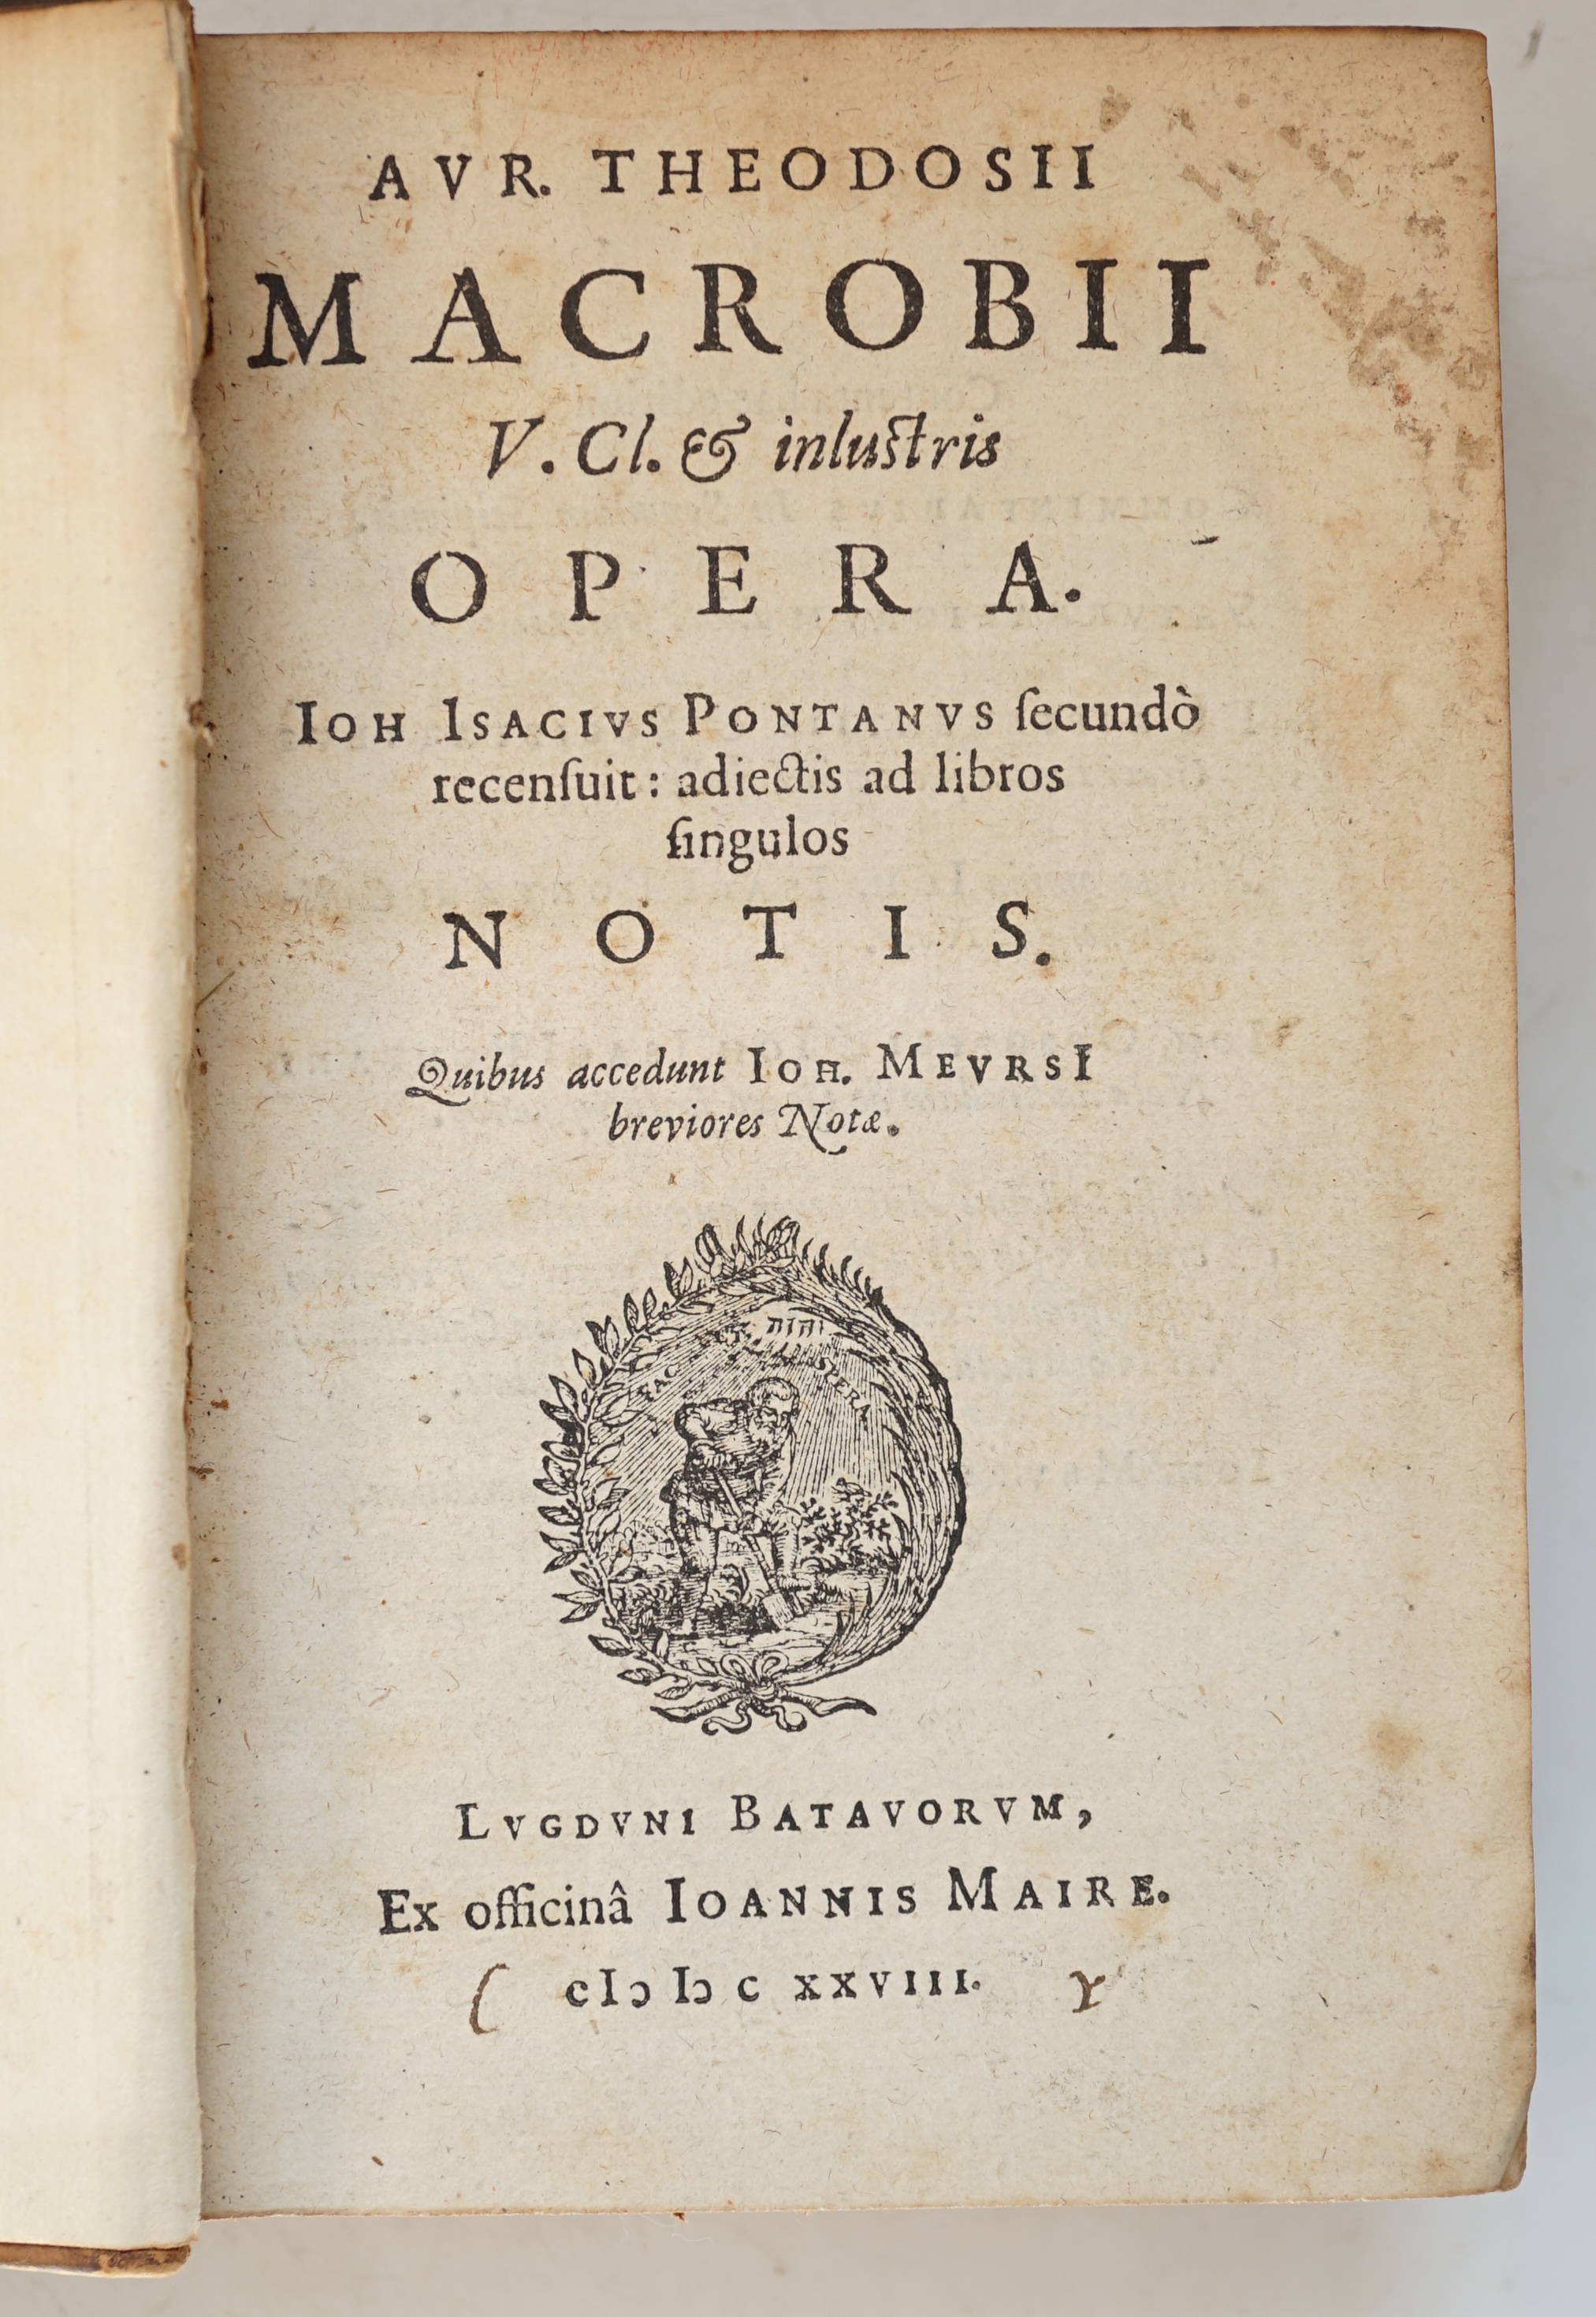 Theodosius, Macrobius Ambrosius - Avr. Theodosii Macrobii V. Cl. & inlustris Opera, 8vo, original calf, ex officina Ioannis Marie, Lyon, 1628.